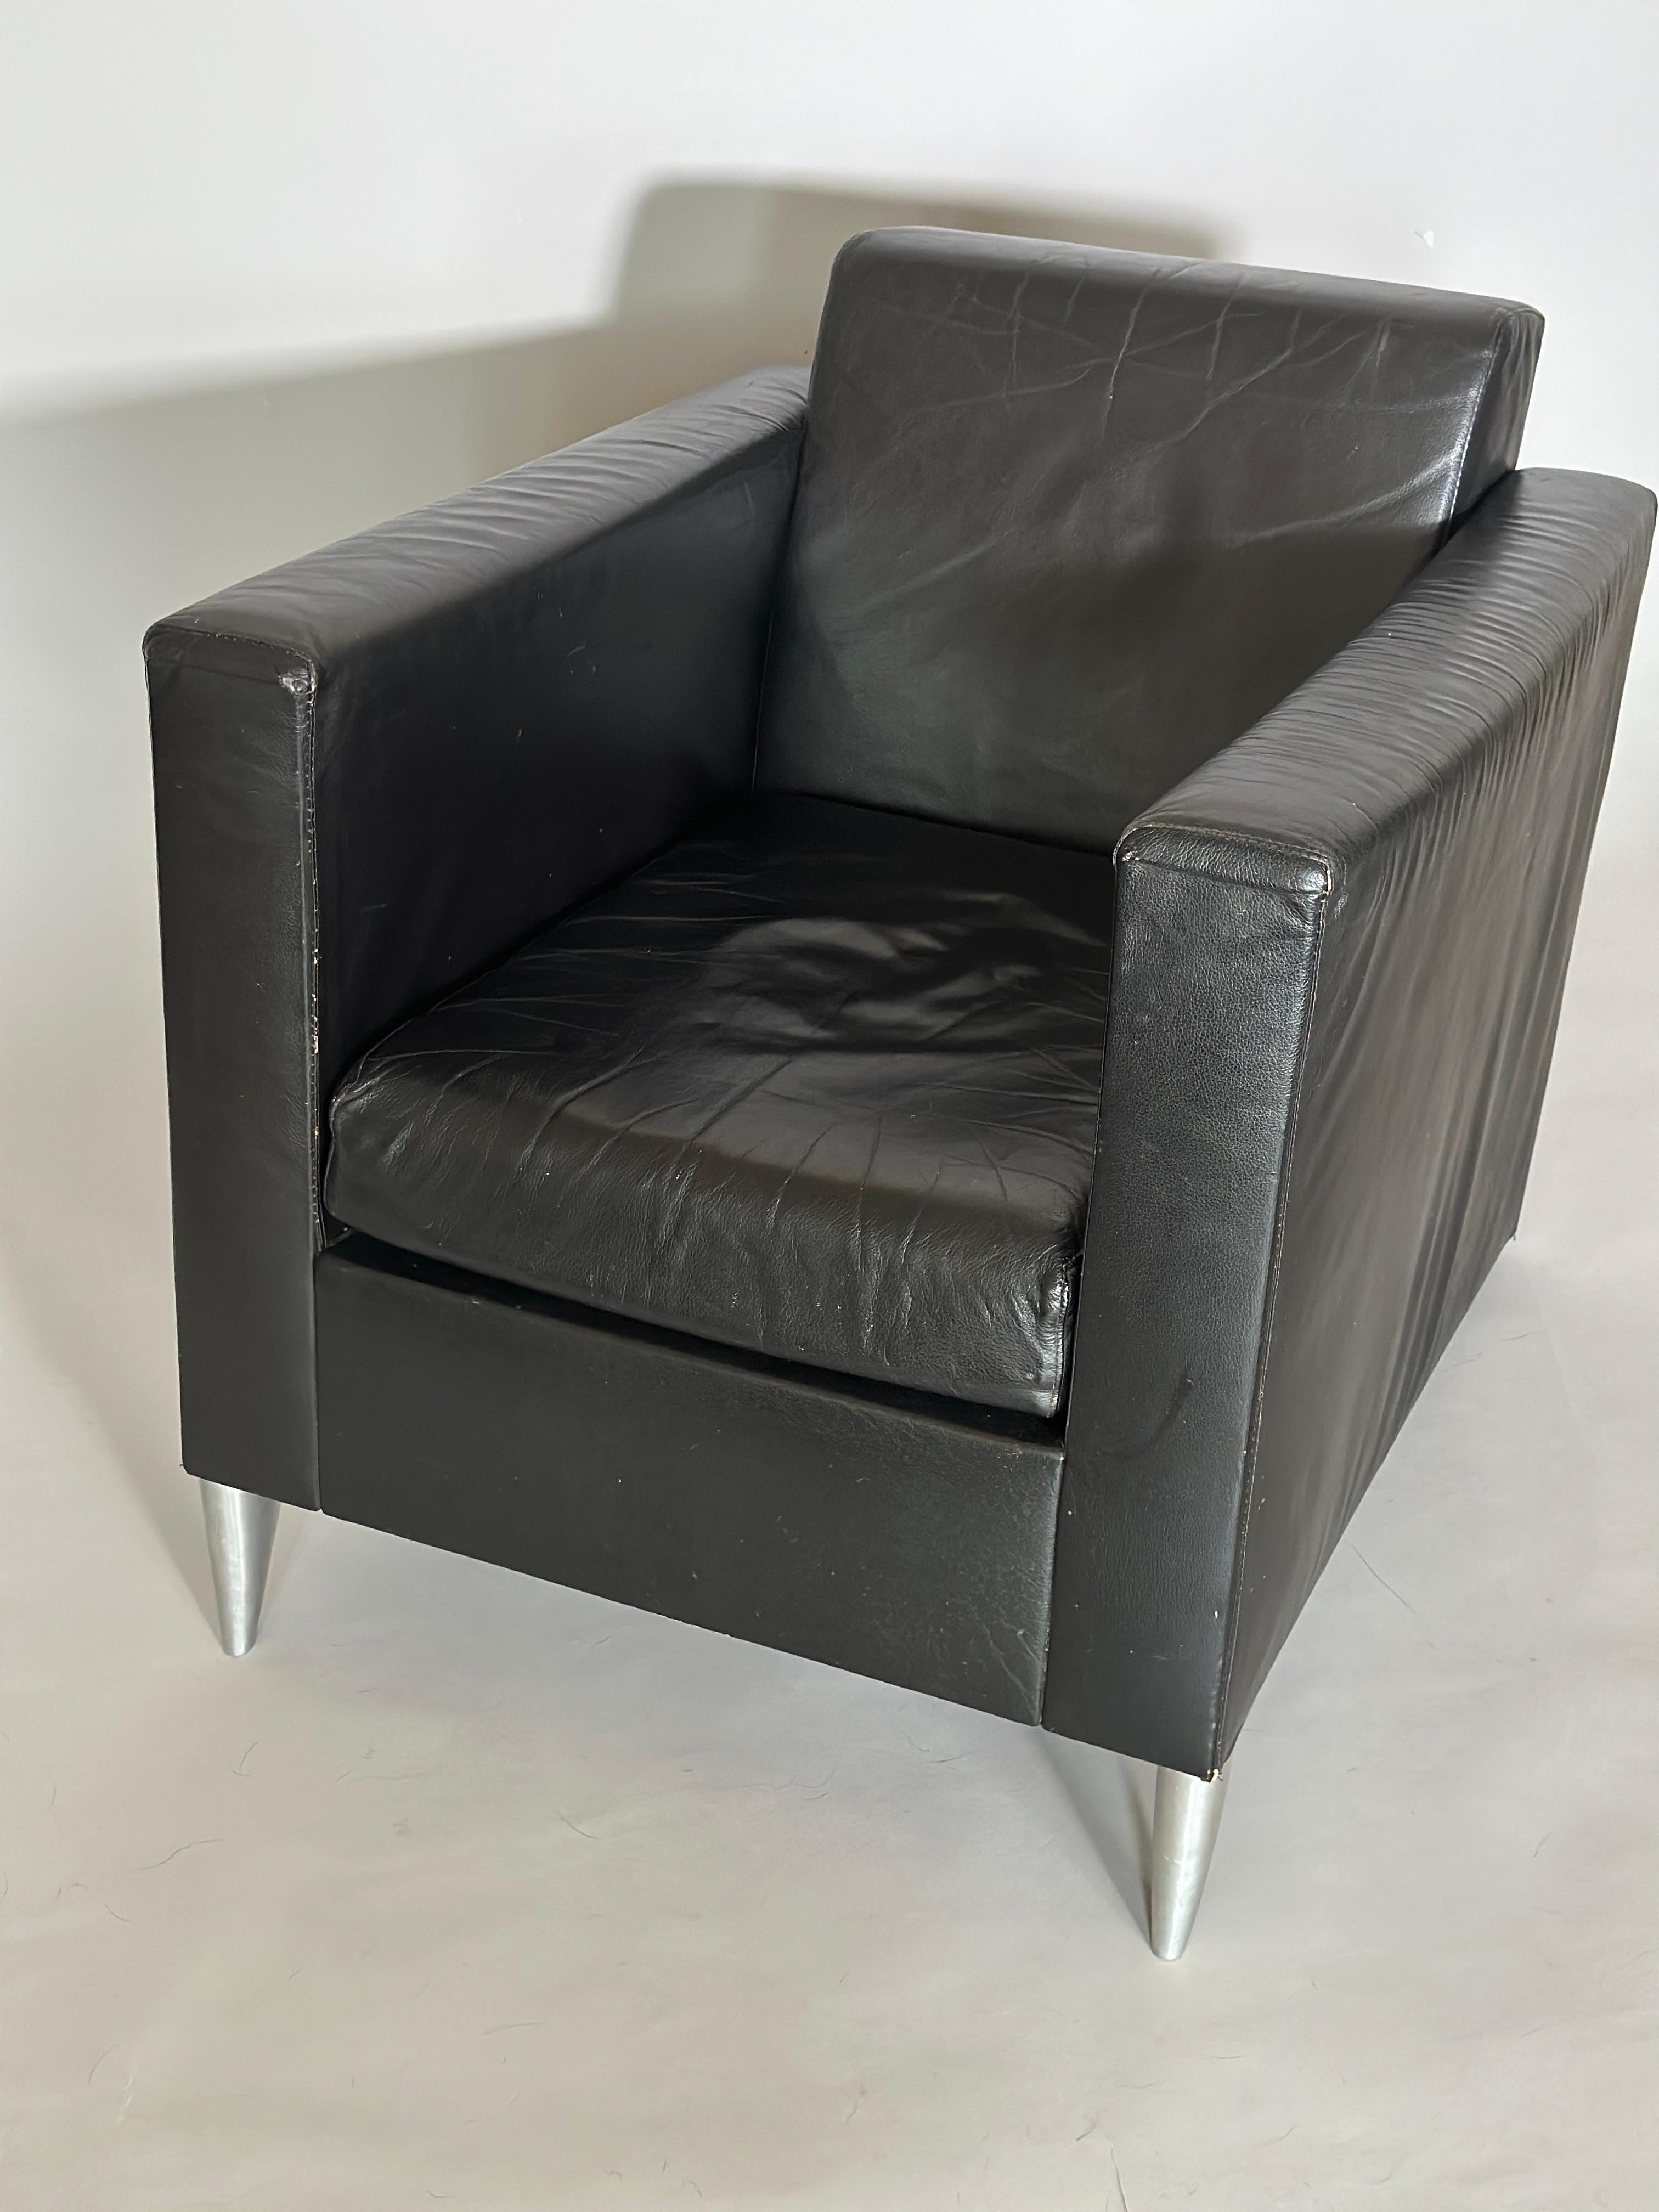 Philippe Starck, Stuhl aus Leder Lounge. 1986 entworfener, tiefer Loungesessel, Vorderseite mit Aluminiumfüßen, geprägtem 